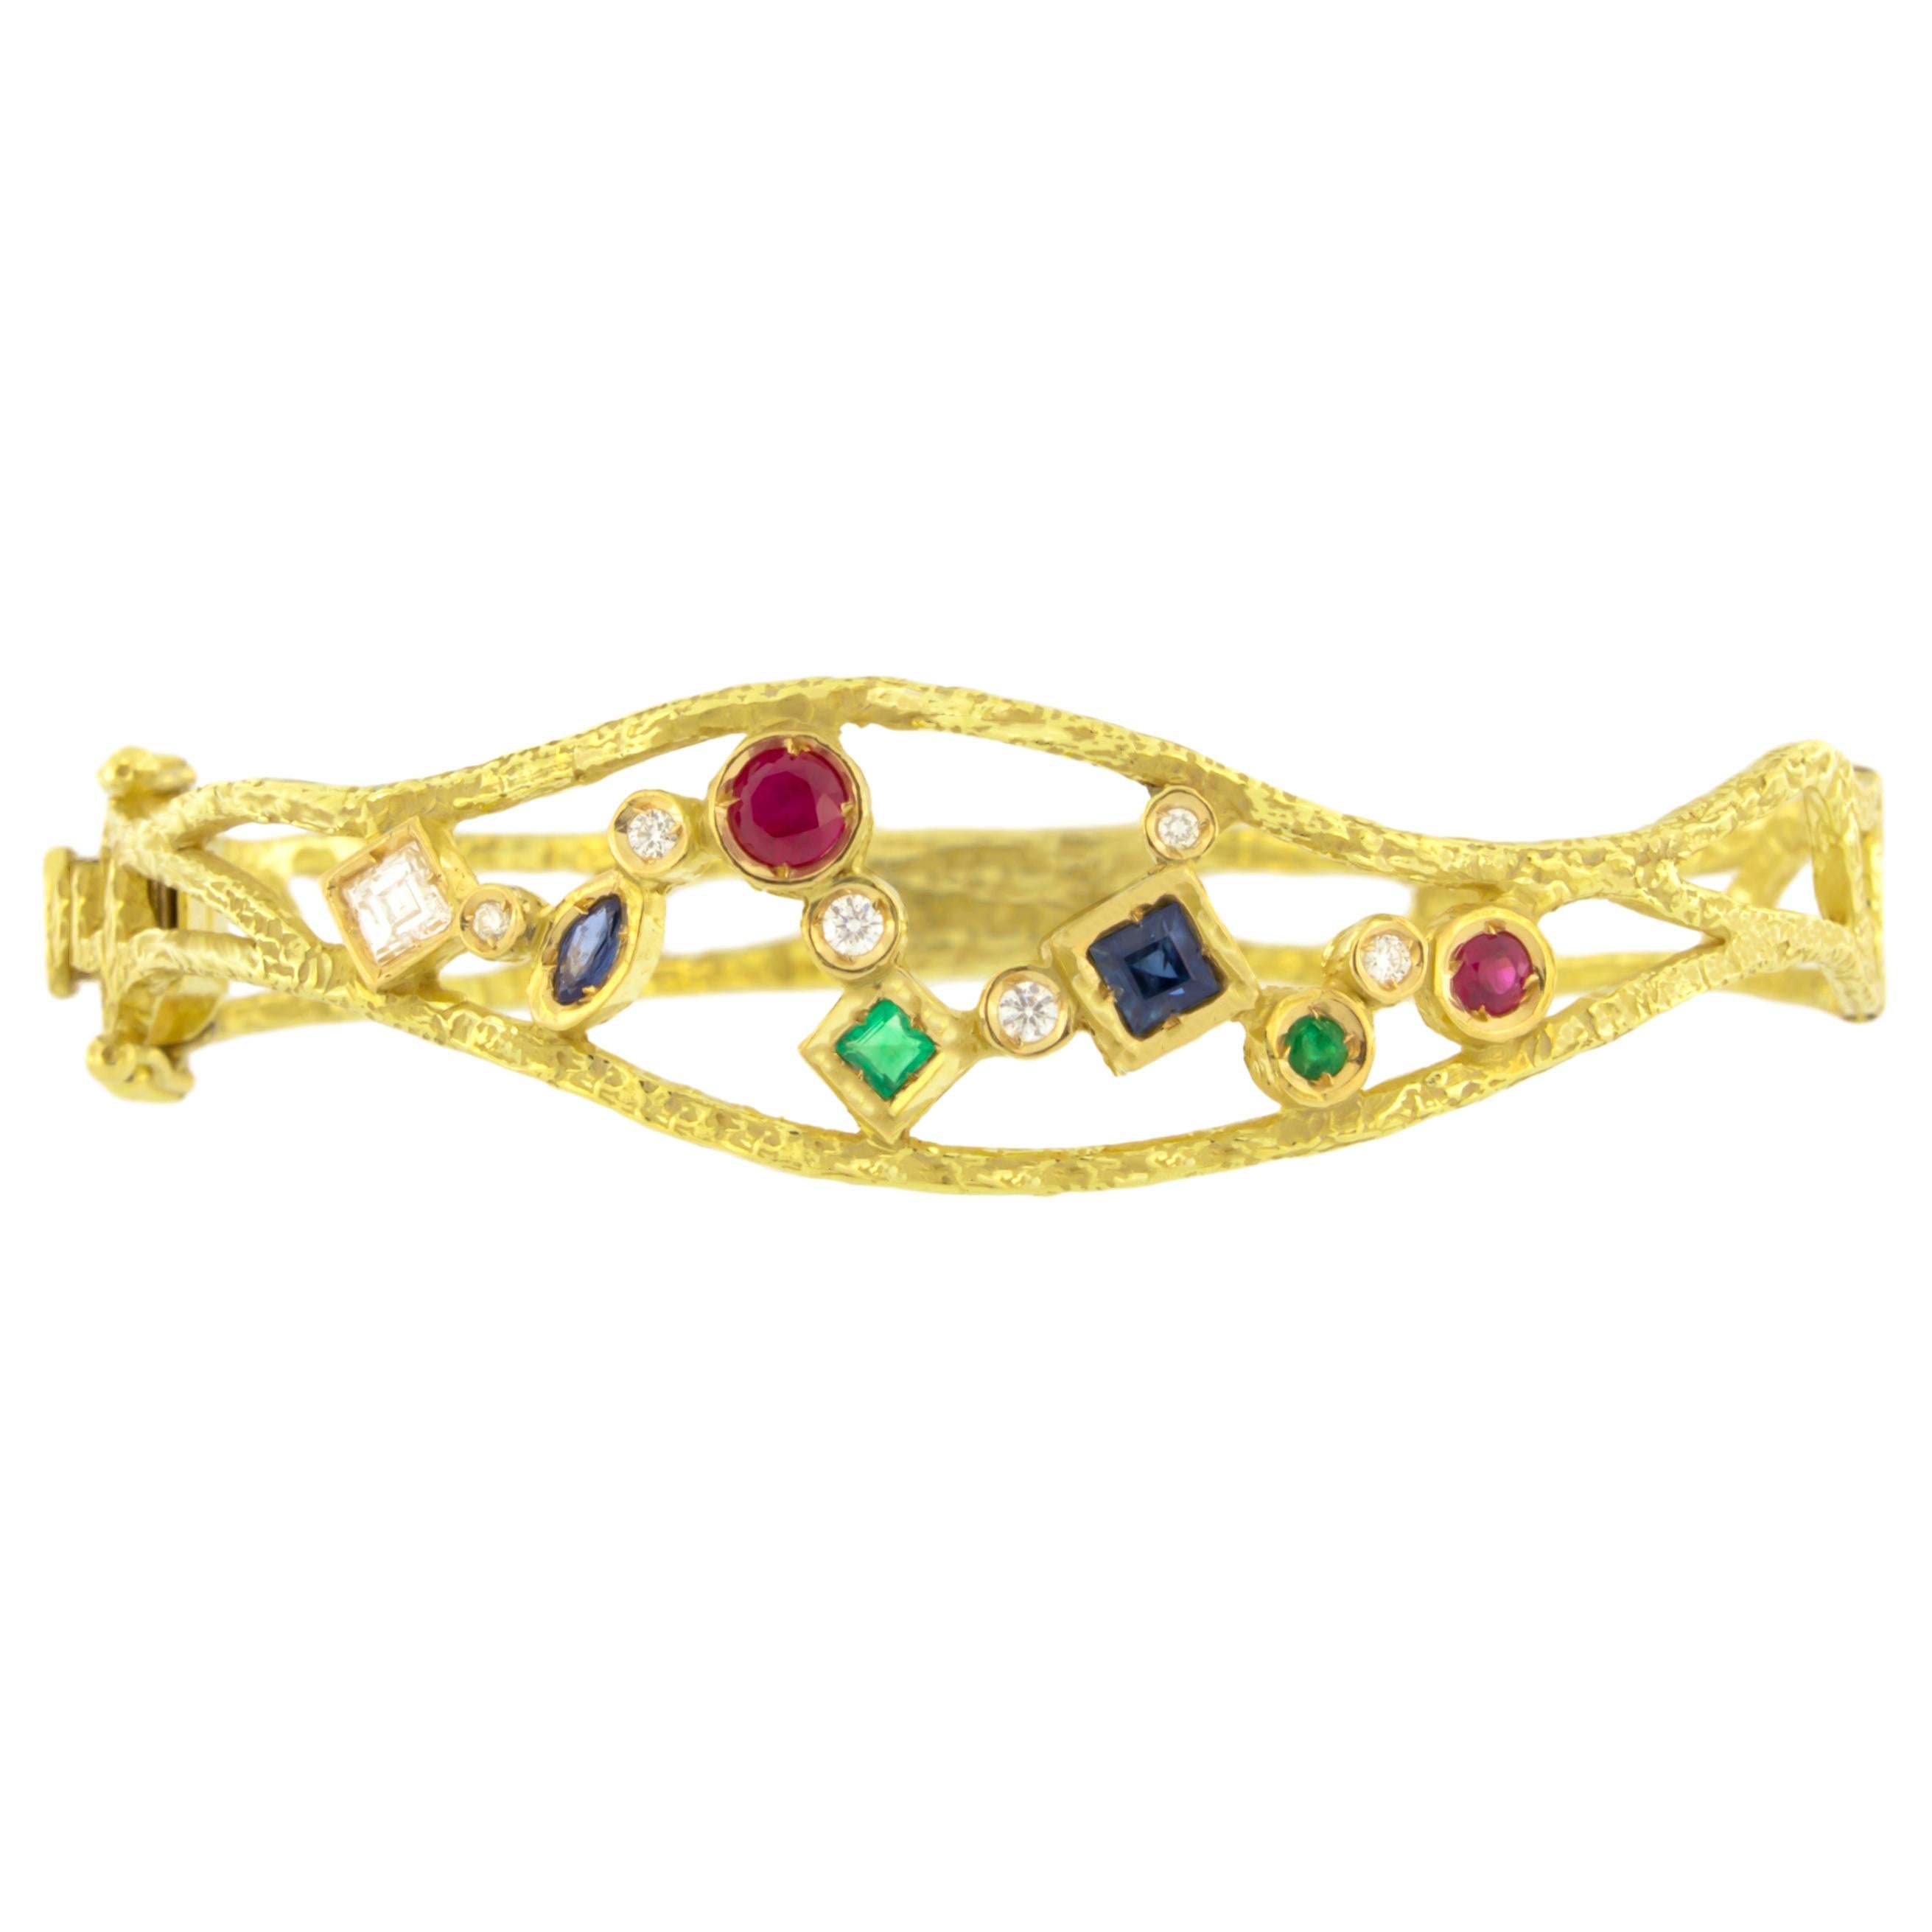 Élégant bracelet manchette en or jaune satiné et pierres précieuses multicolores, fabriqué à la main selon la technique du moulage à la cire perdue.

Le moulage à la cire perdue, l'une des plus anciennes techniques de création de bijoux, constitue